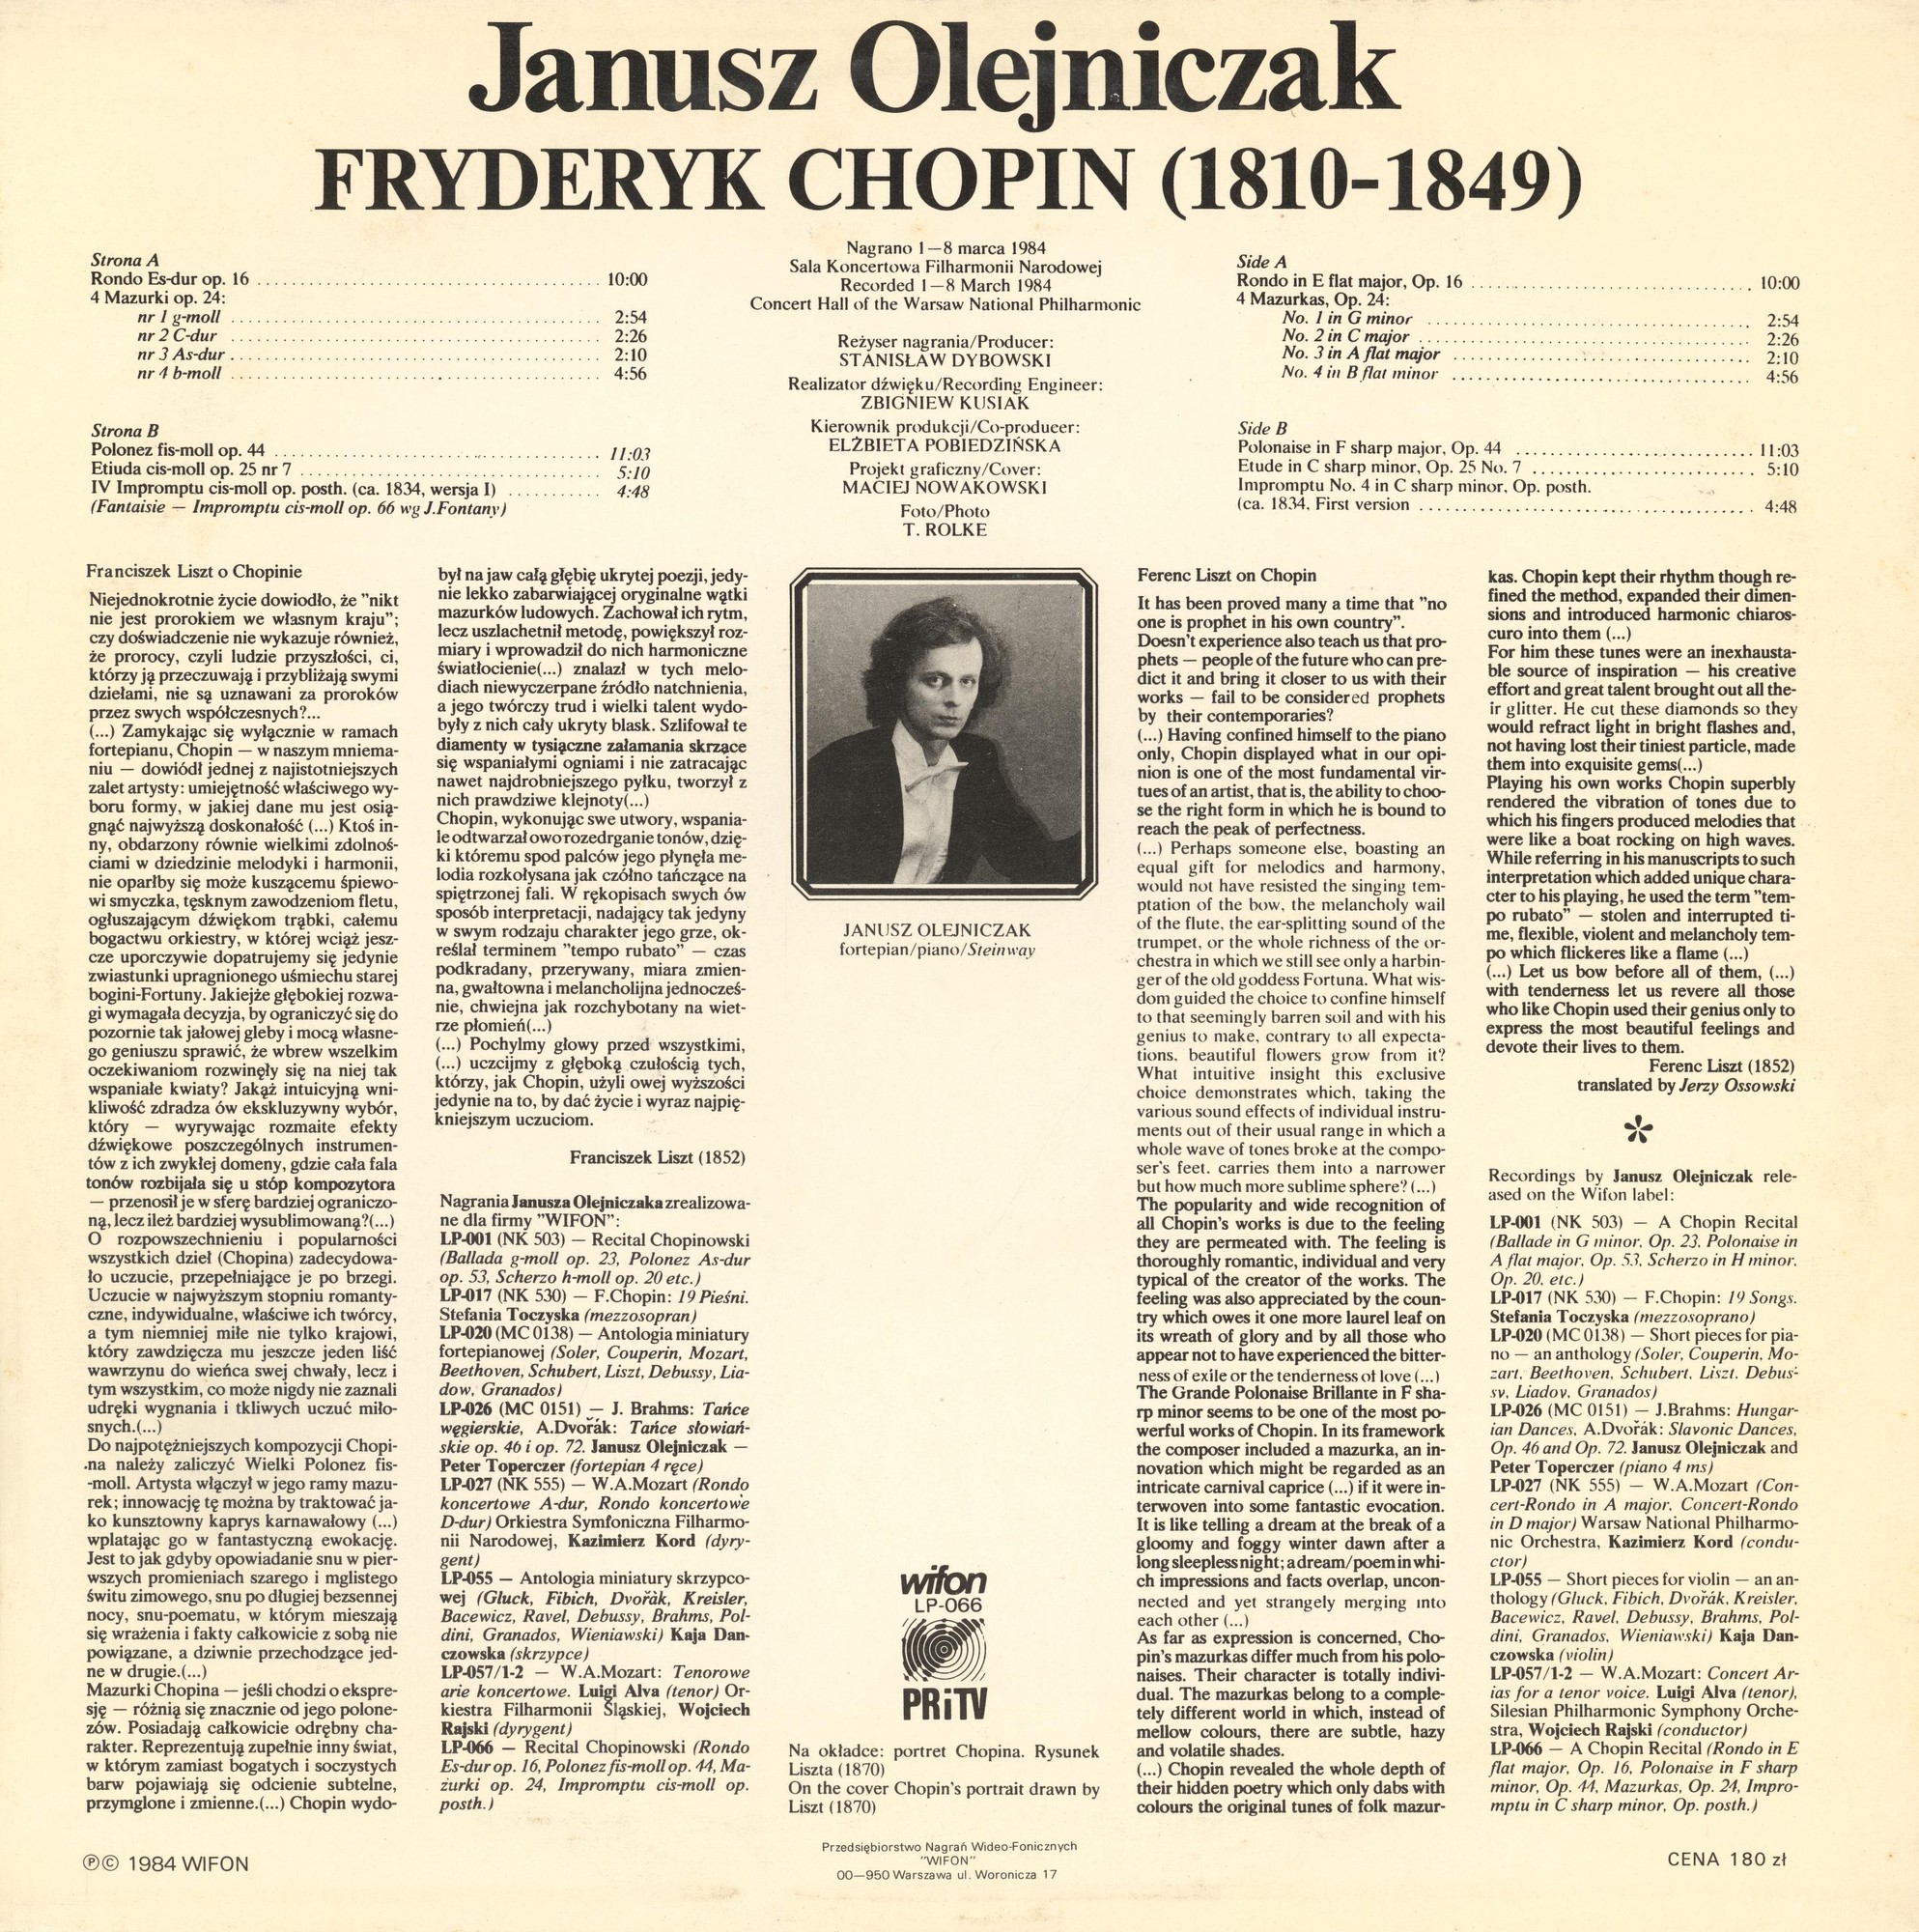 Janusz Olejniczak: Chopin -  Rondo Op.16 Mazurki Op.24  Polonez Op.44 [по заказу польской фирмы WIFON, LP 066]